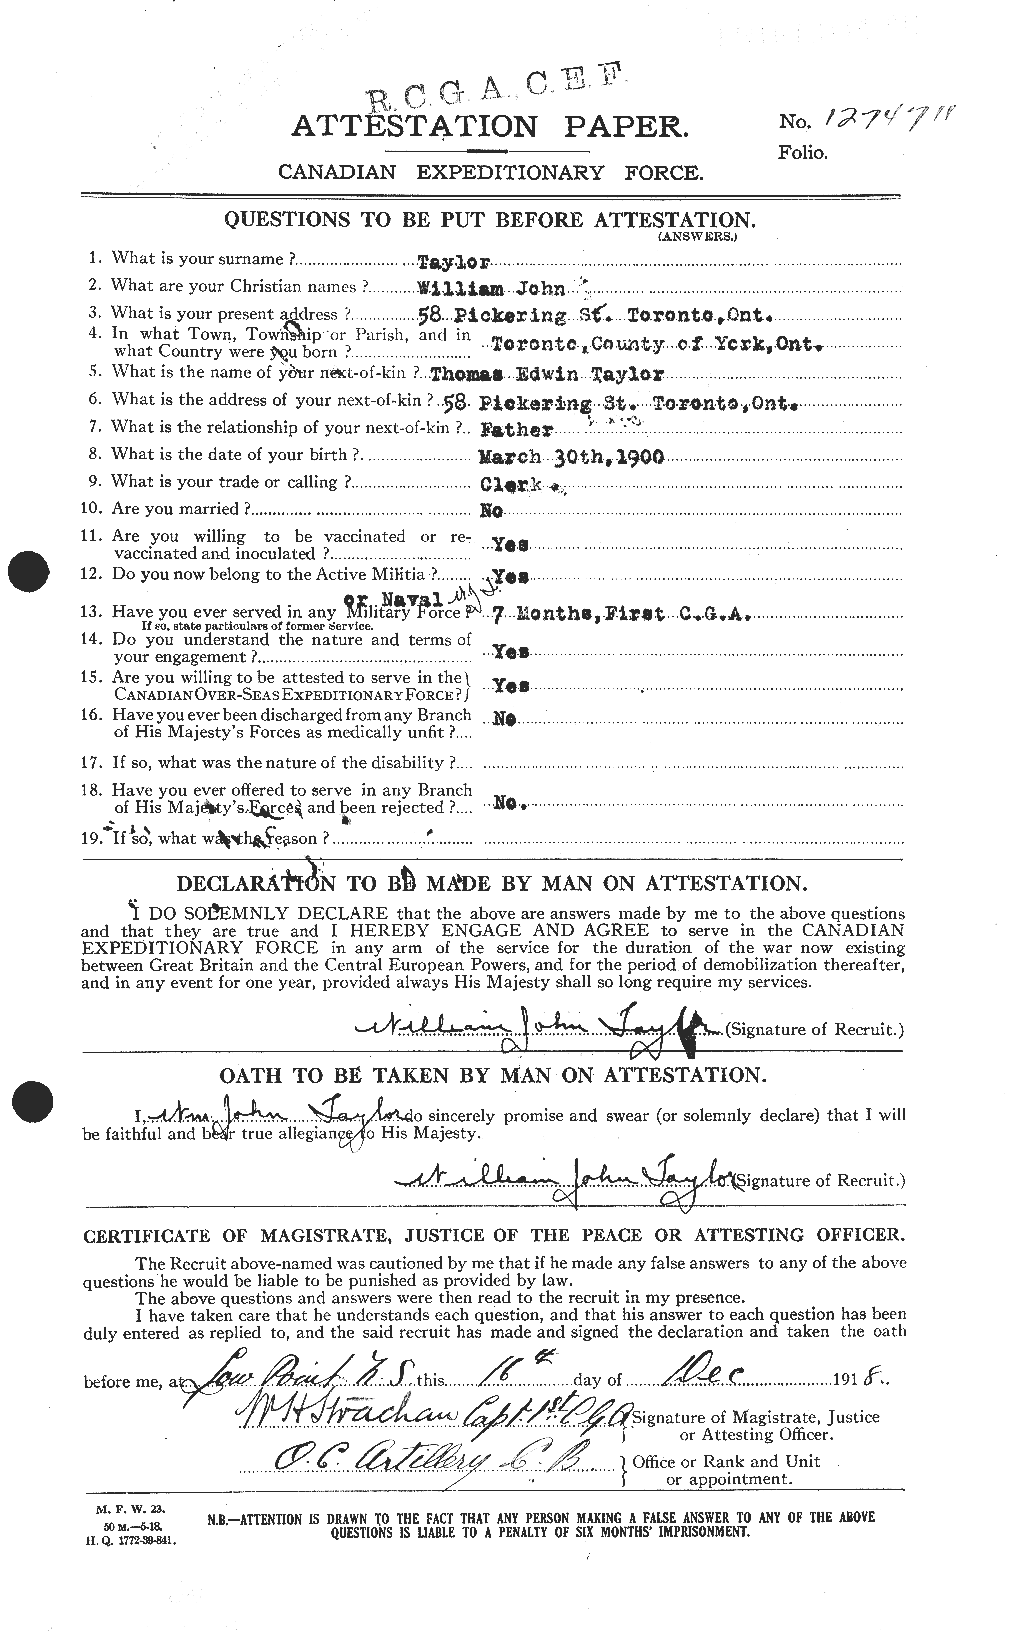 Dossiers du Personnel de la Première Guerre mondiale - CEC 628308a